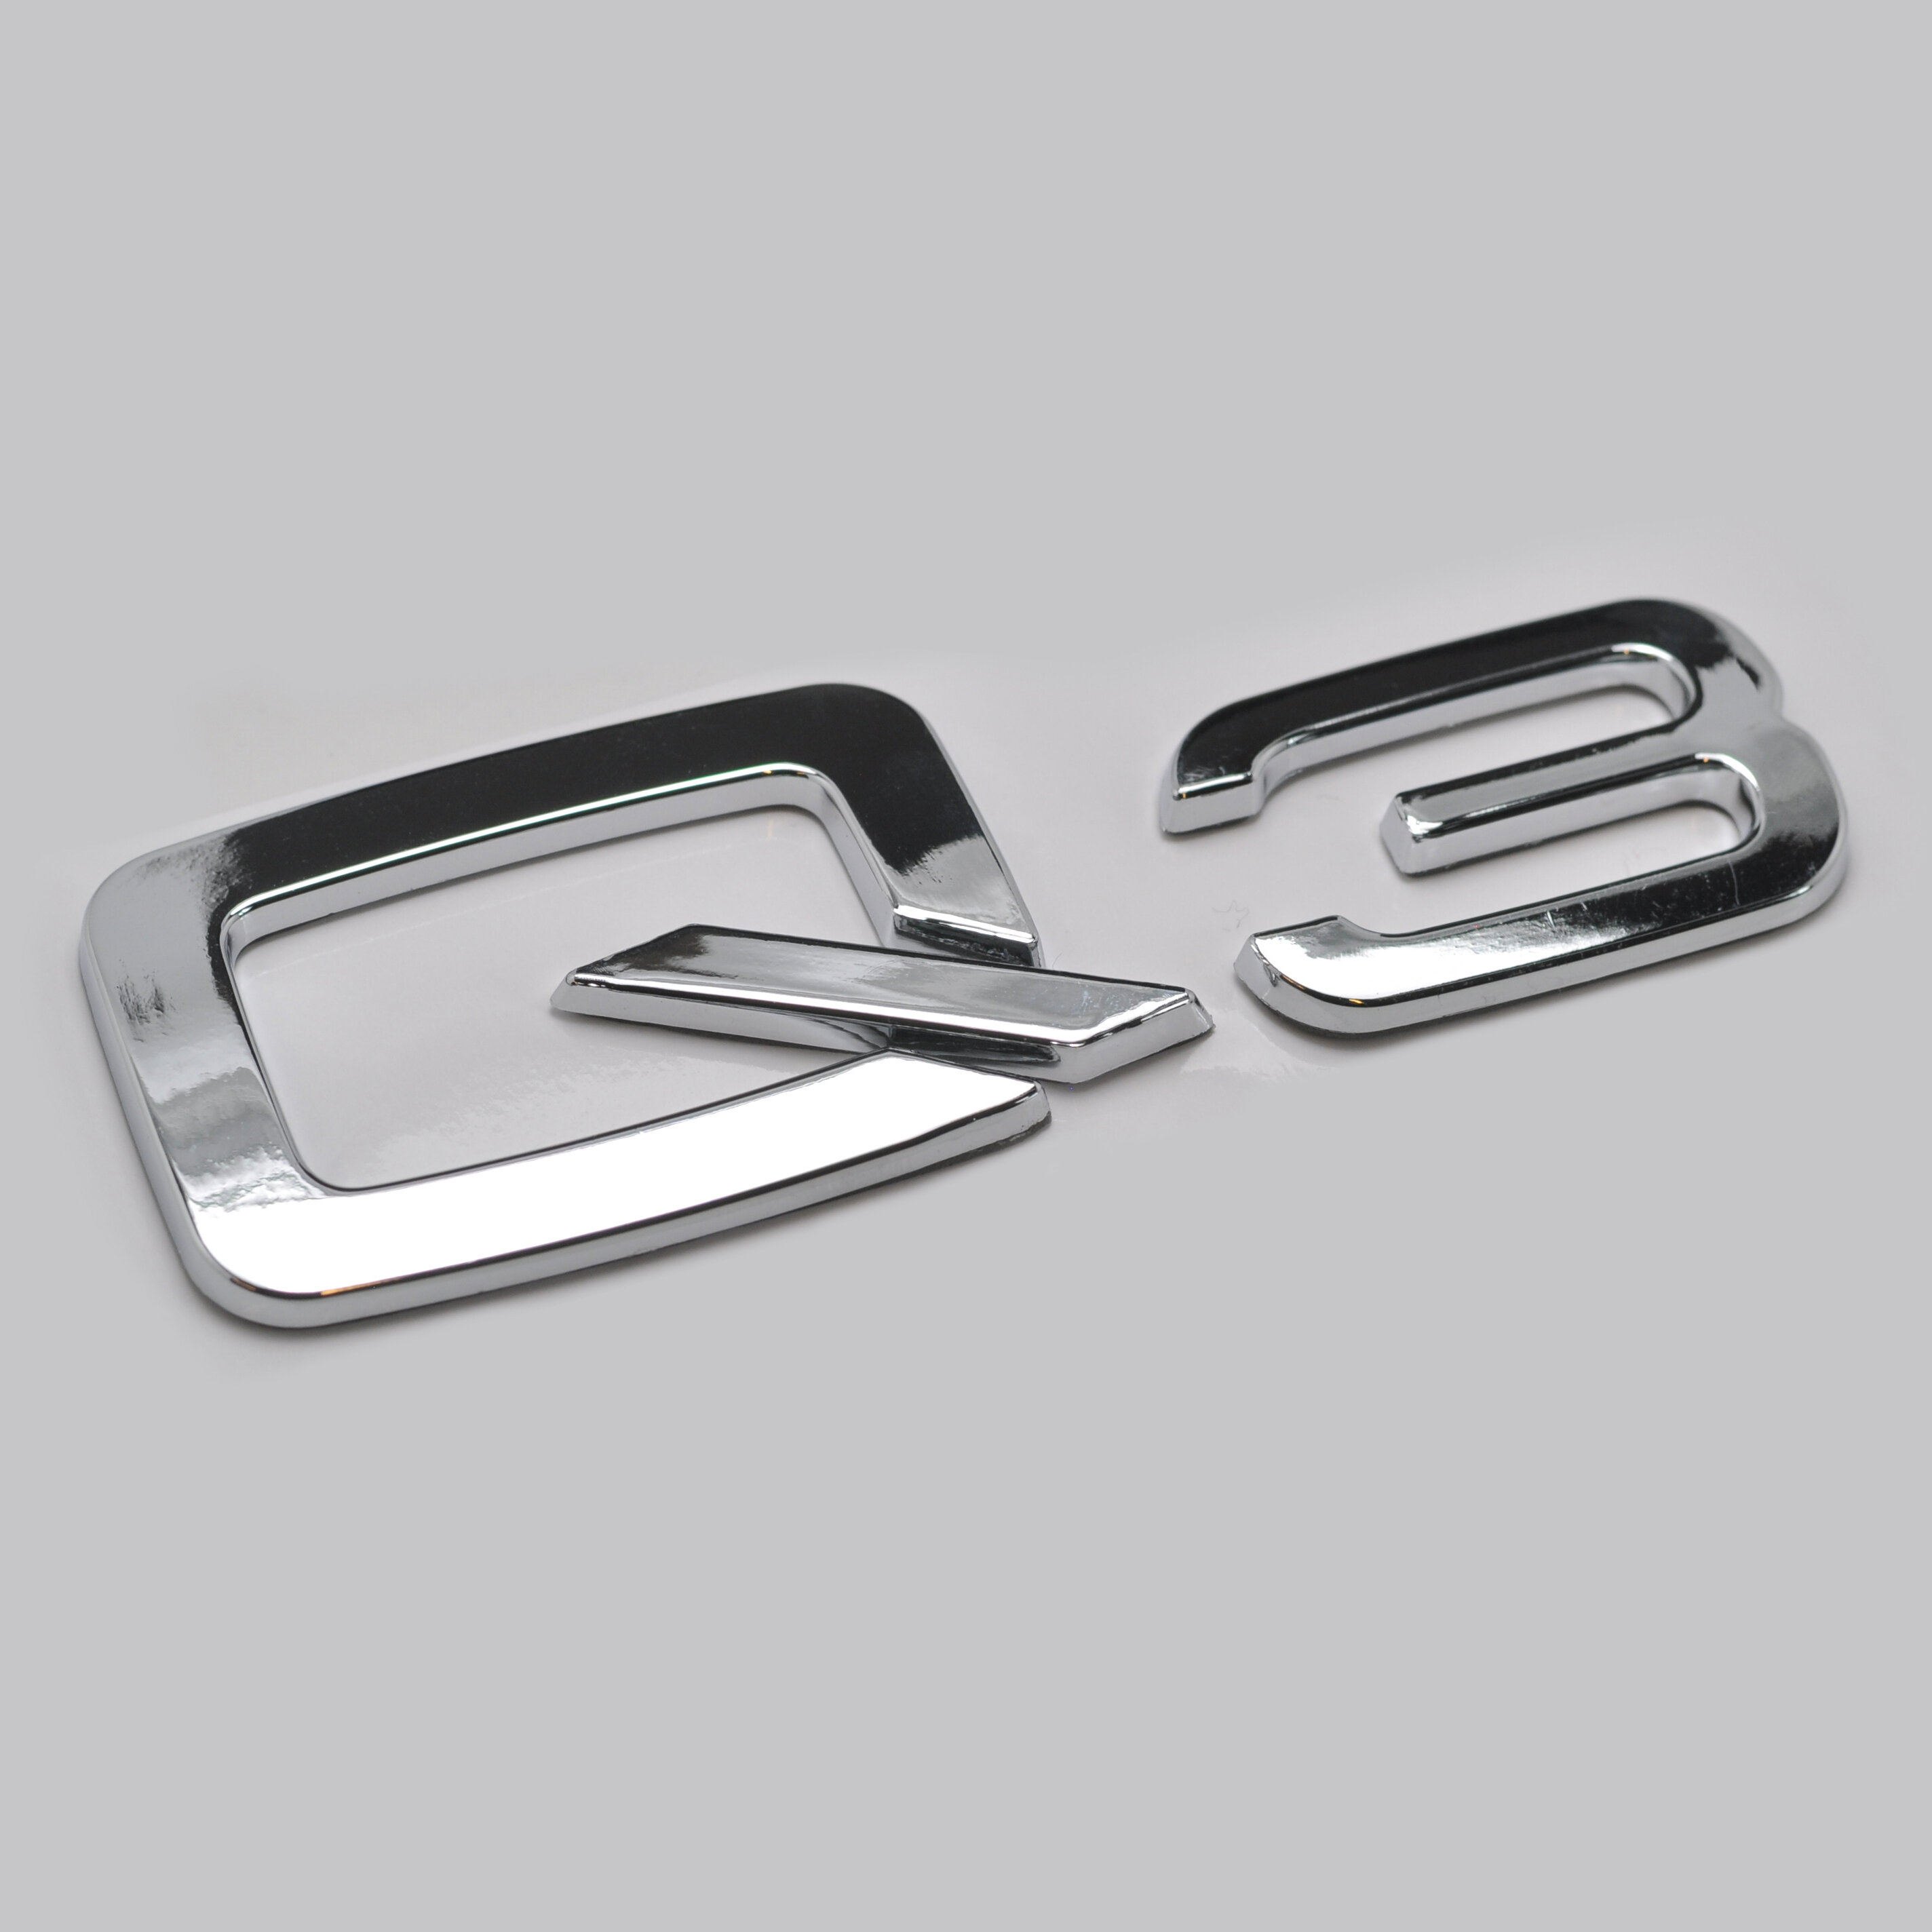 Silver Chrome Audi Q3 Rear Boot Badge Emblem Letter Number For Q3 Models